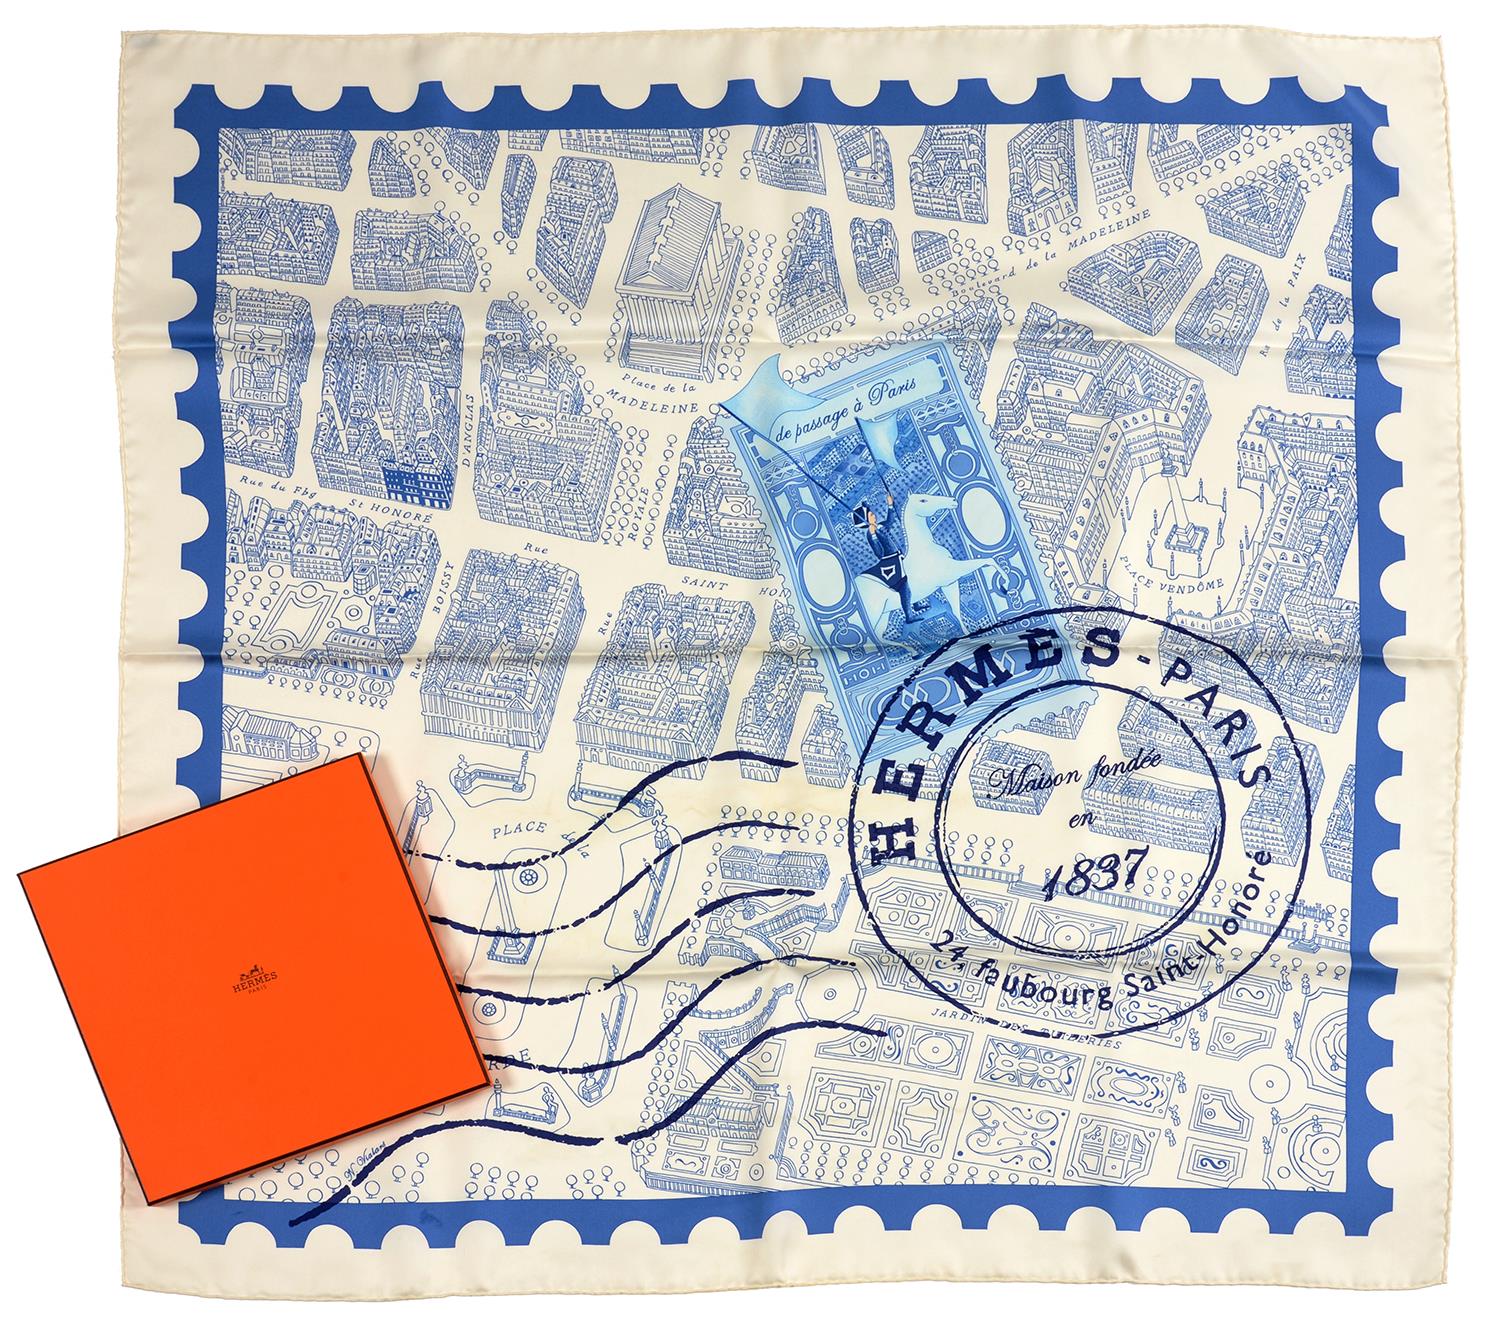 HERMÉS. 'DE PASSAGE À PARIS' BLUE AND WHITE SQUARE SILK SCARF, 90 x 90 CM, BOXED